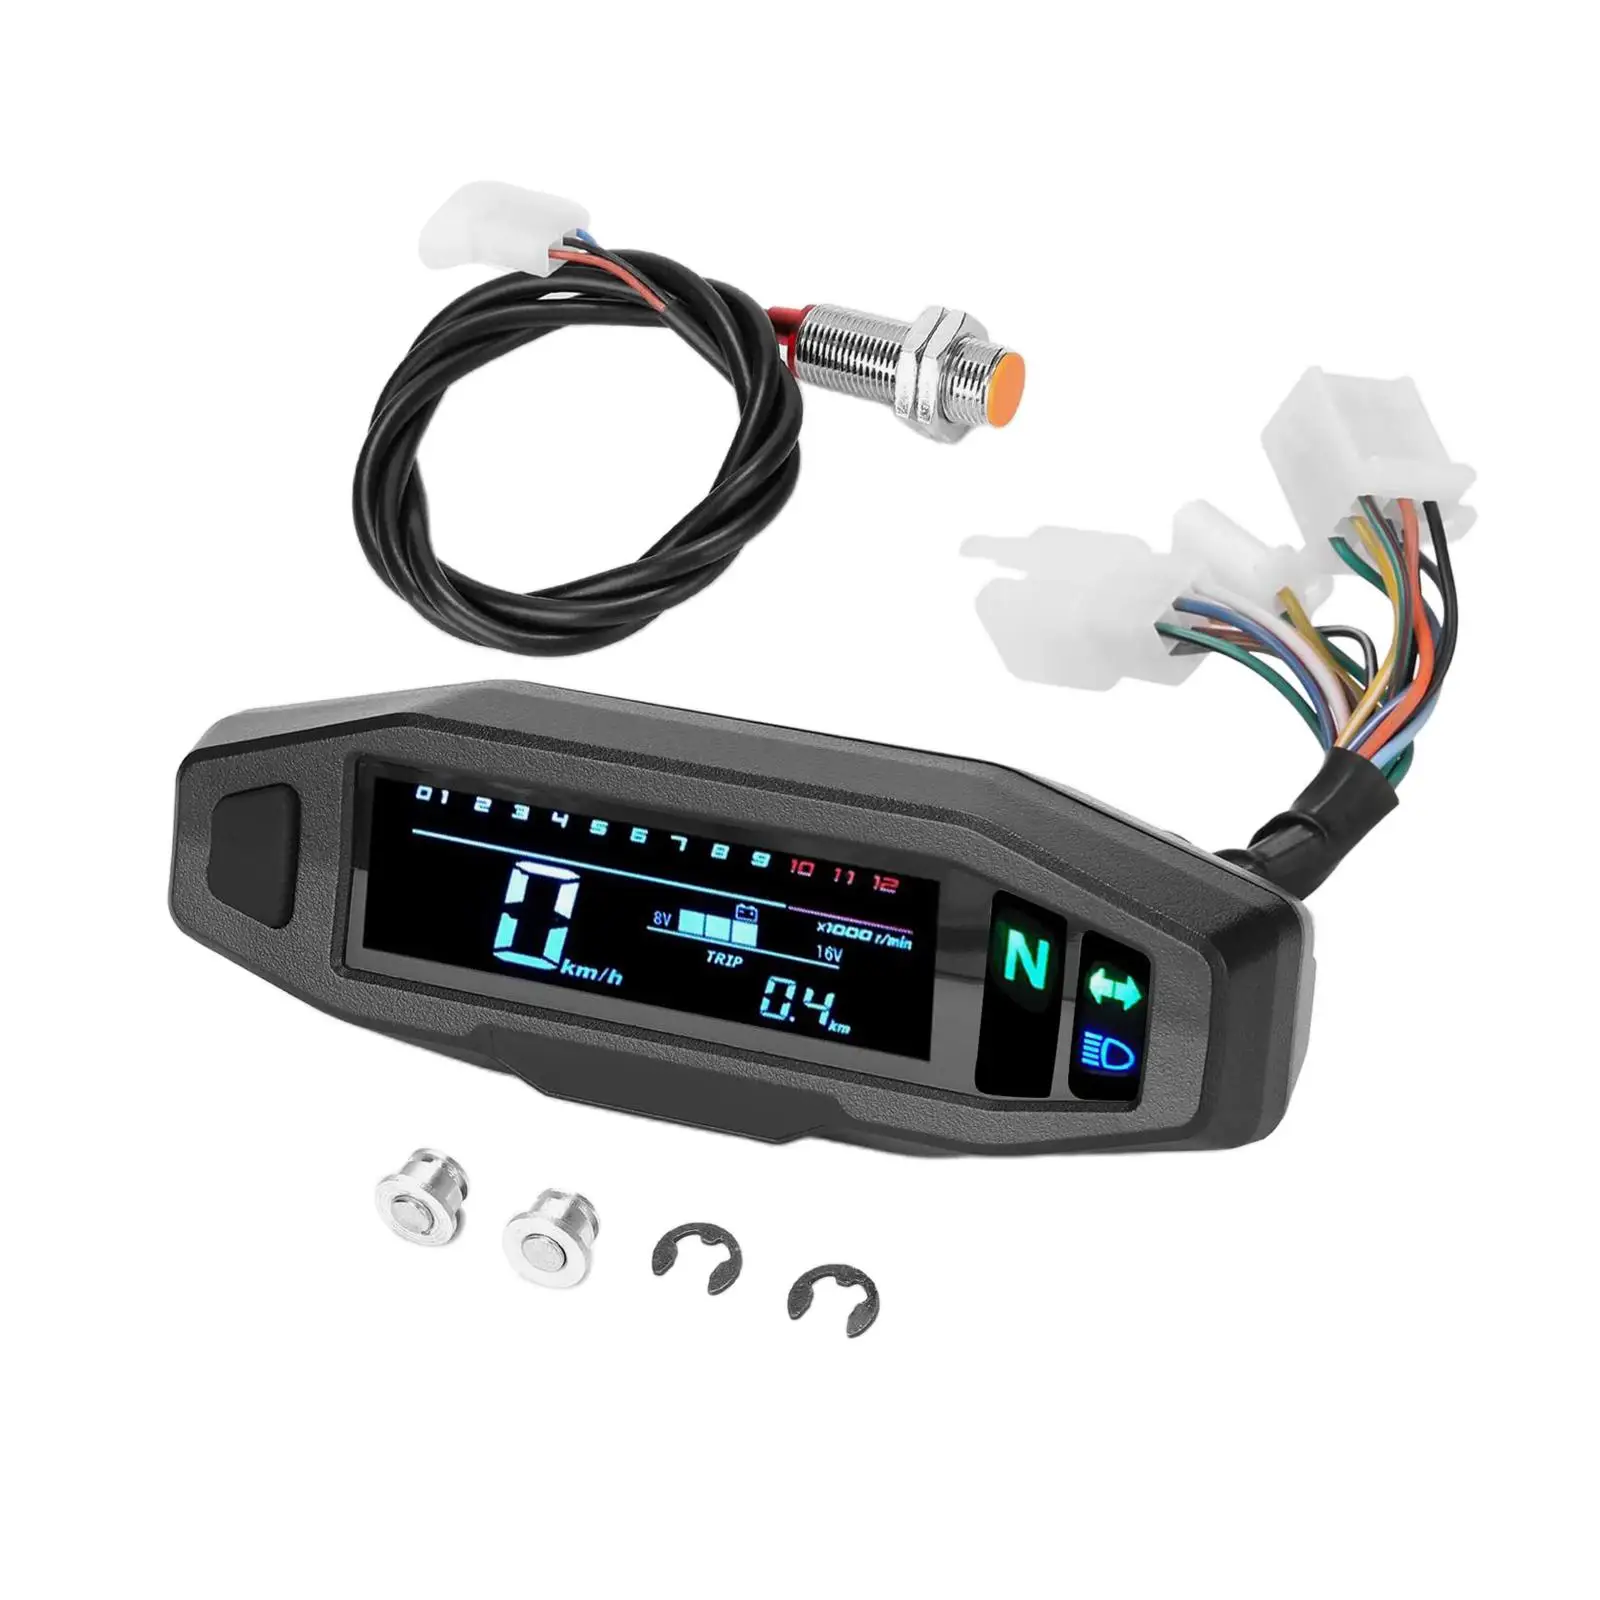 Digital Motorbike Speedometer LCD Display DC 12V Parts Waterproof Electric